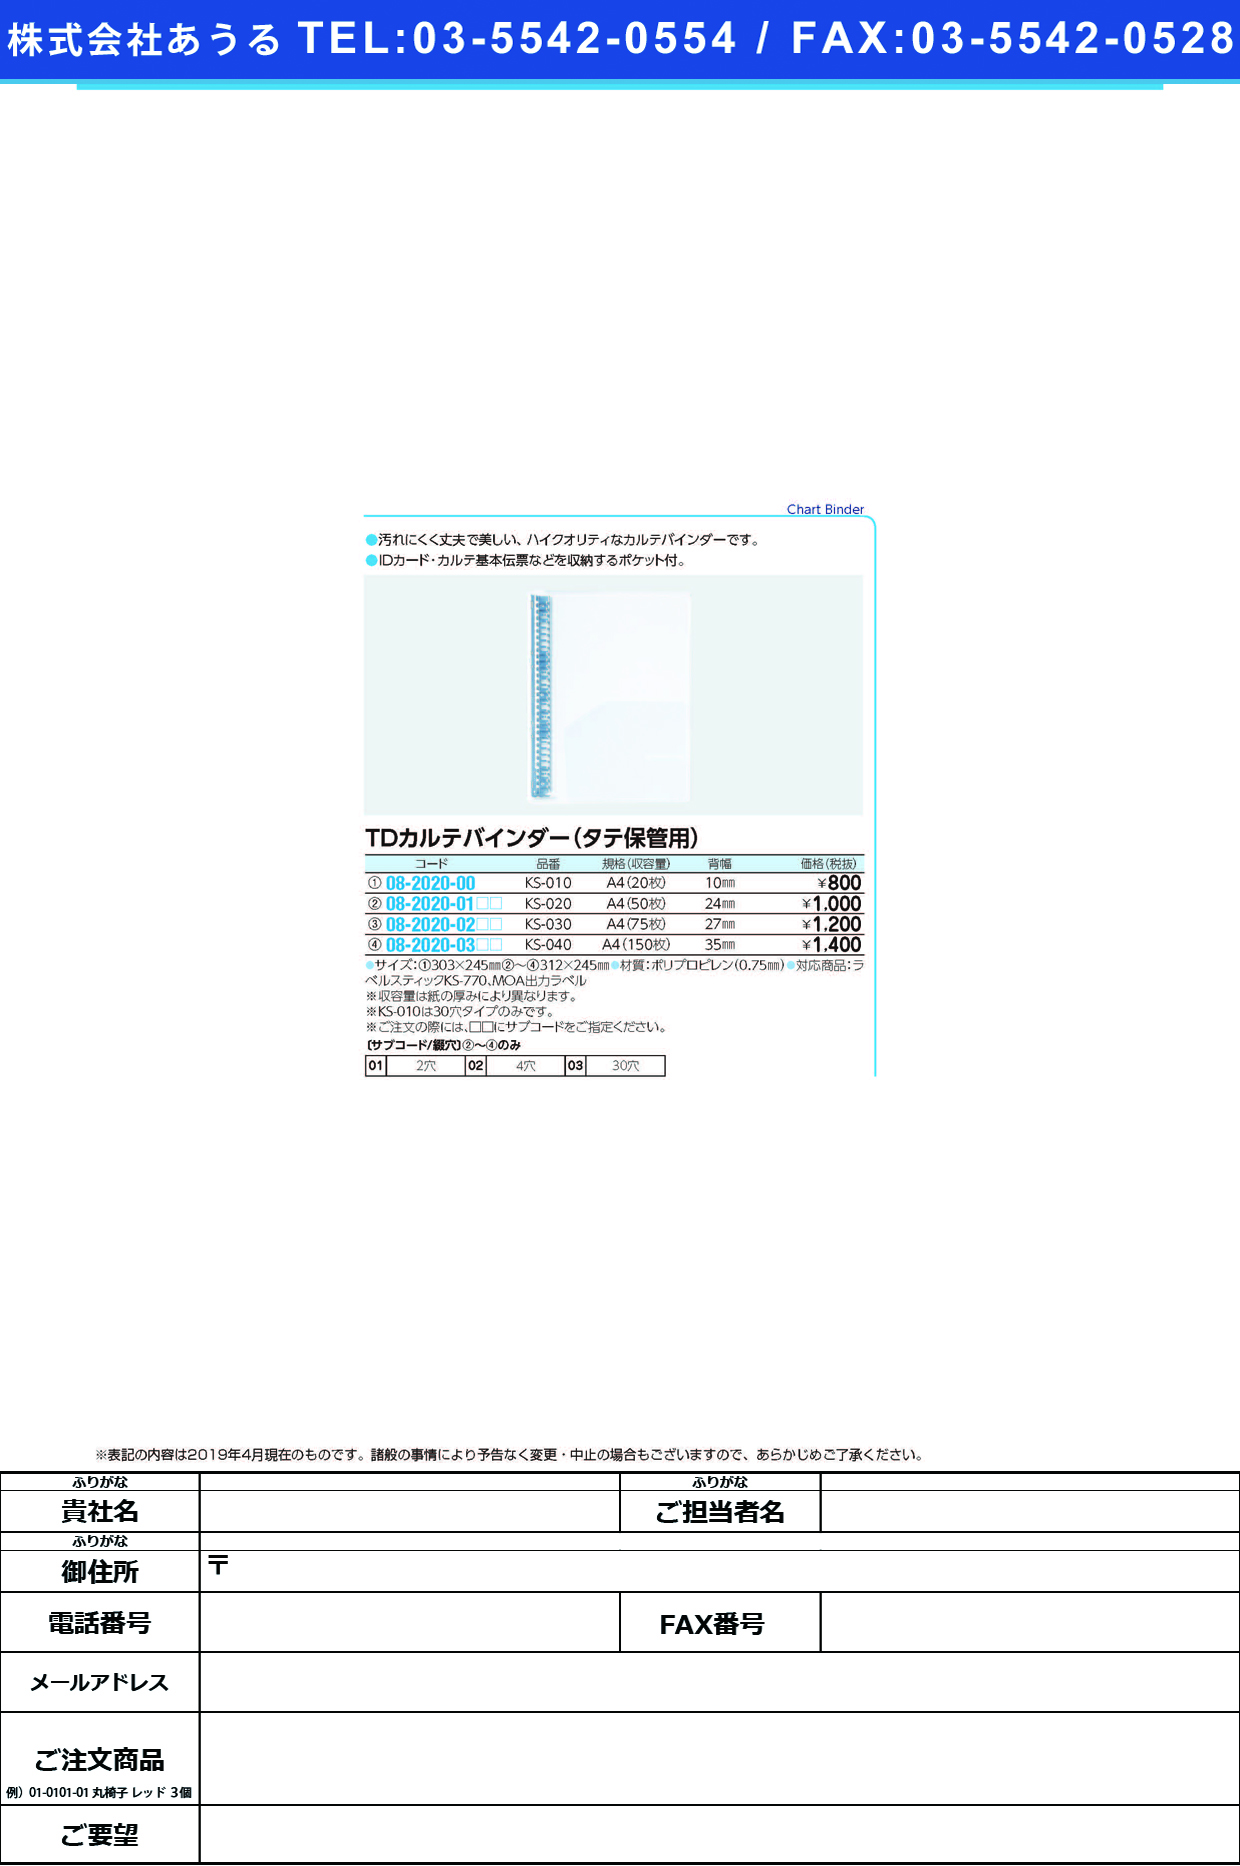 (08-2020-03)ＴＤカルテバインダー（Ａ４用） KS-040(ﾄｳﾒｲ) TDｶﾙﾃﾊﾞｲﾝﾀﾞｰ ２穴(ケルン)【1冊単位】【2019年カタログ商品】